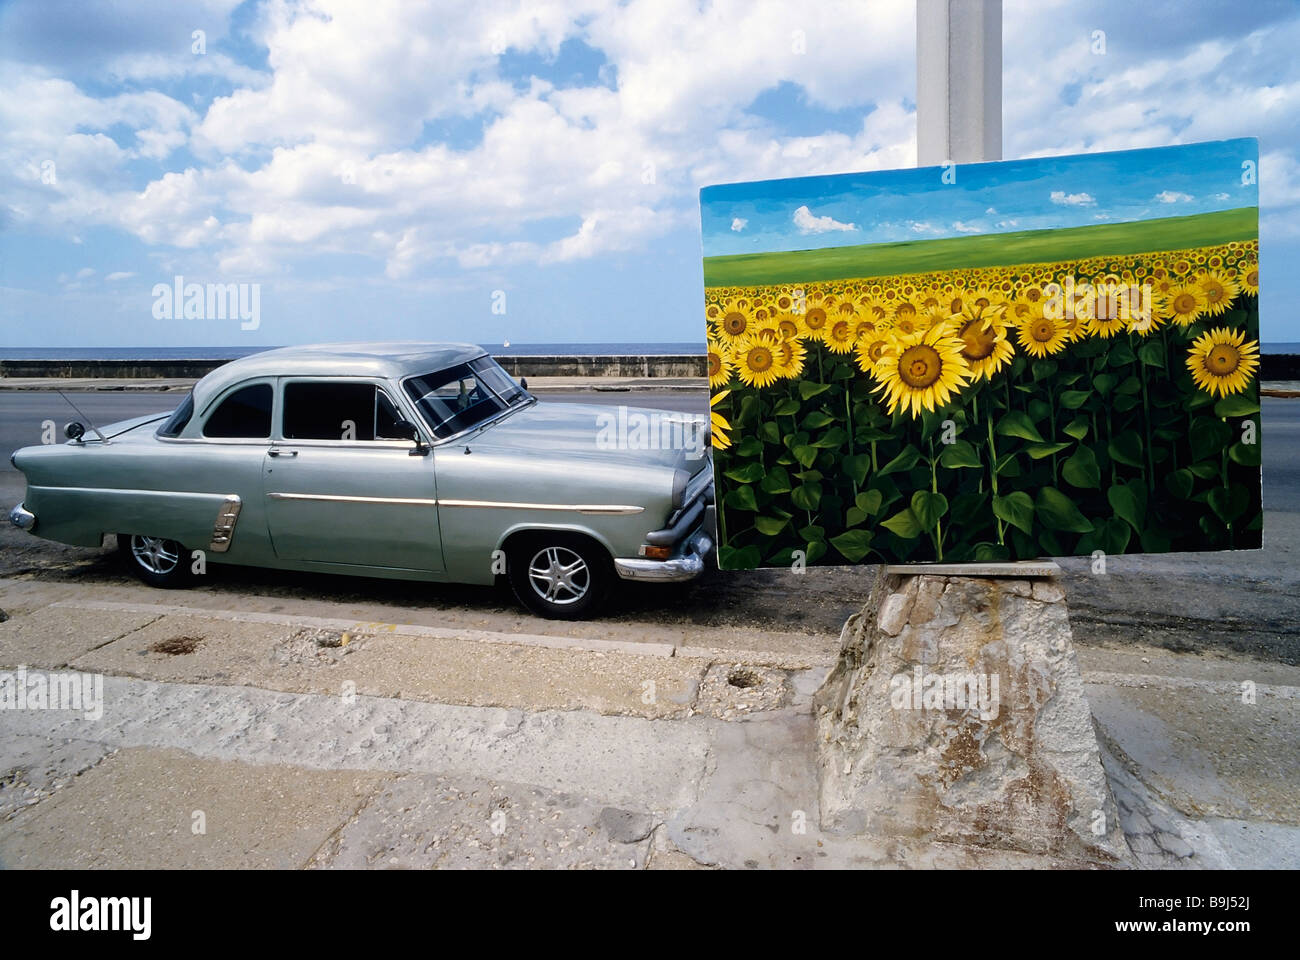 Peinture d'un champ de tournesol, affichée sur route, US vintage car, marché aux puces, Vedado, La Havane, Cuba, Caraïbes Banque D'Images